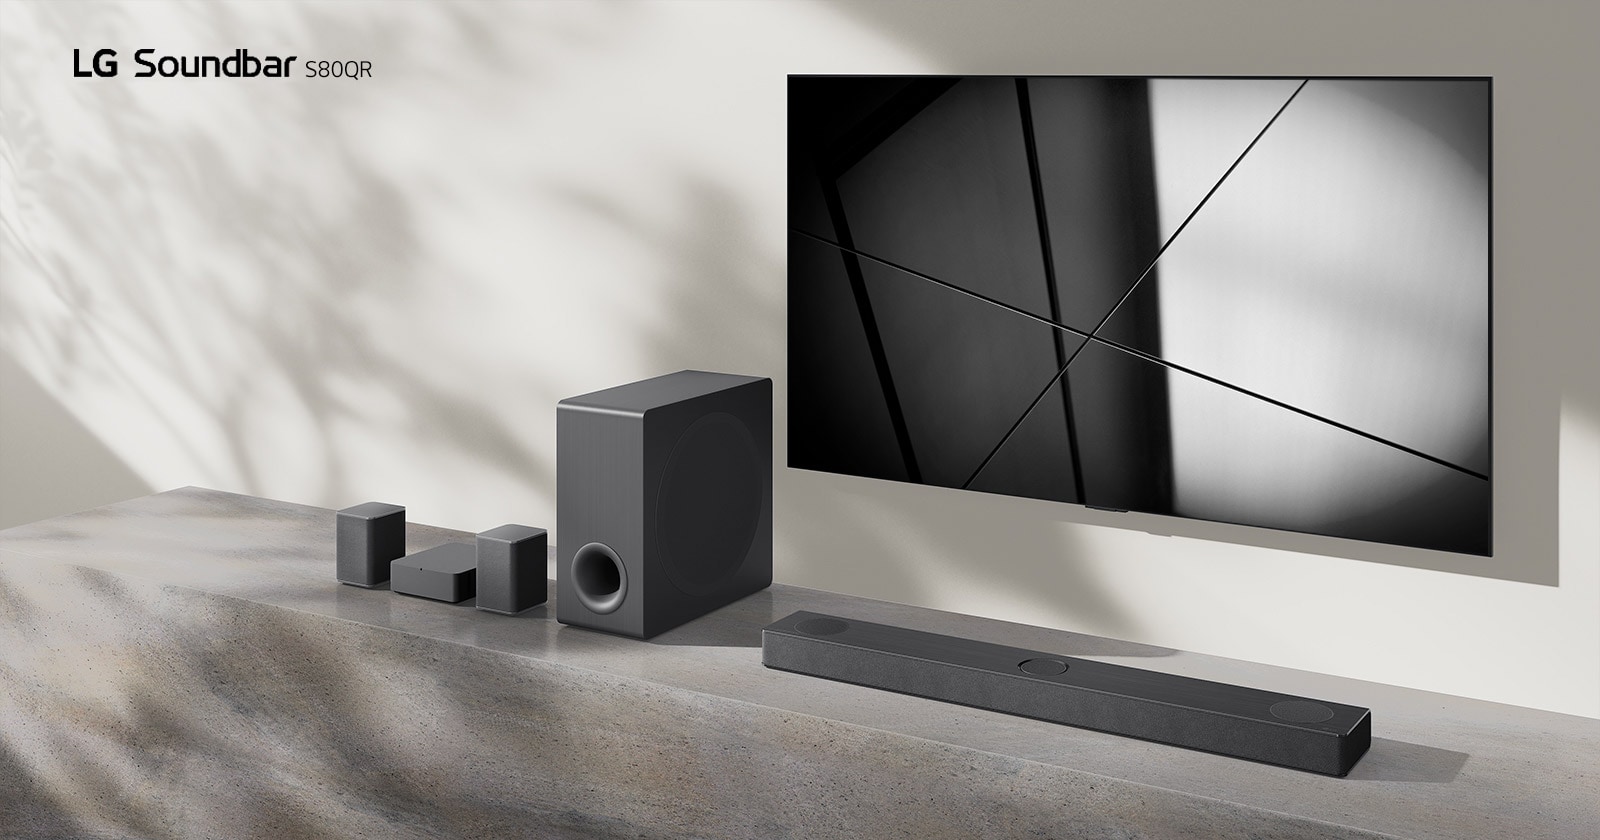 مكبر الصوت S80QR من مكبر الصوت S80QR وتلفزيون من LG موضوعان معًا في غرفة المعيشة. التلفزيون يعمل ويعرض صورة بالأسود والأبيض.